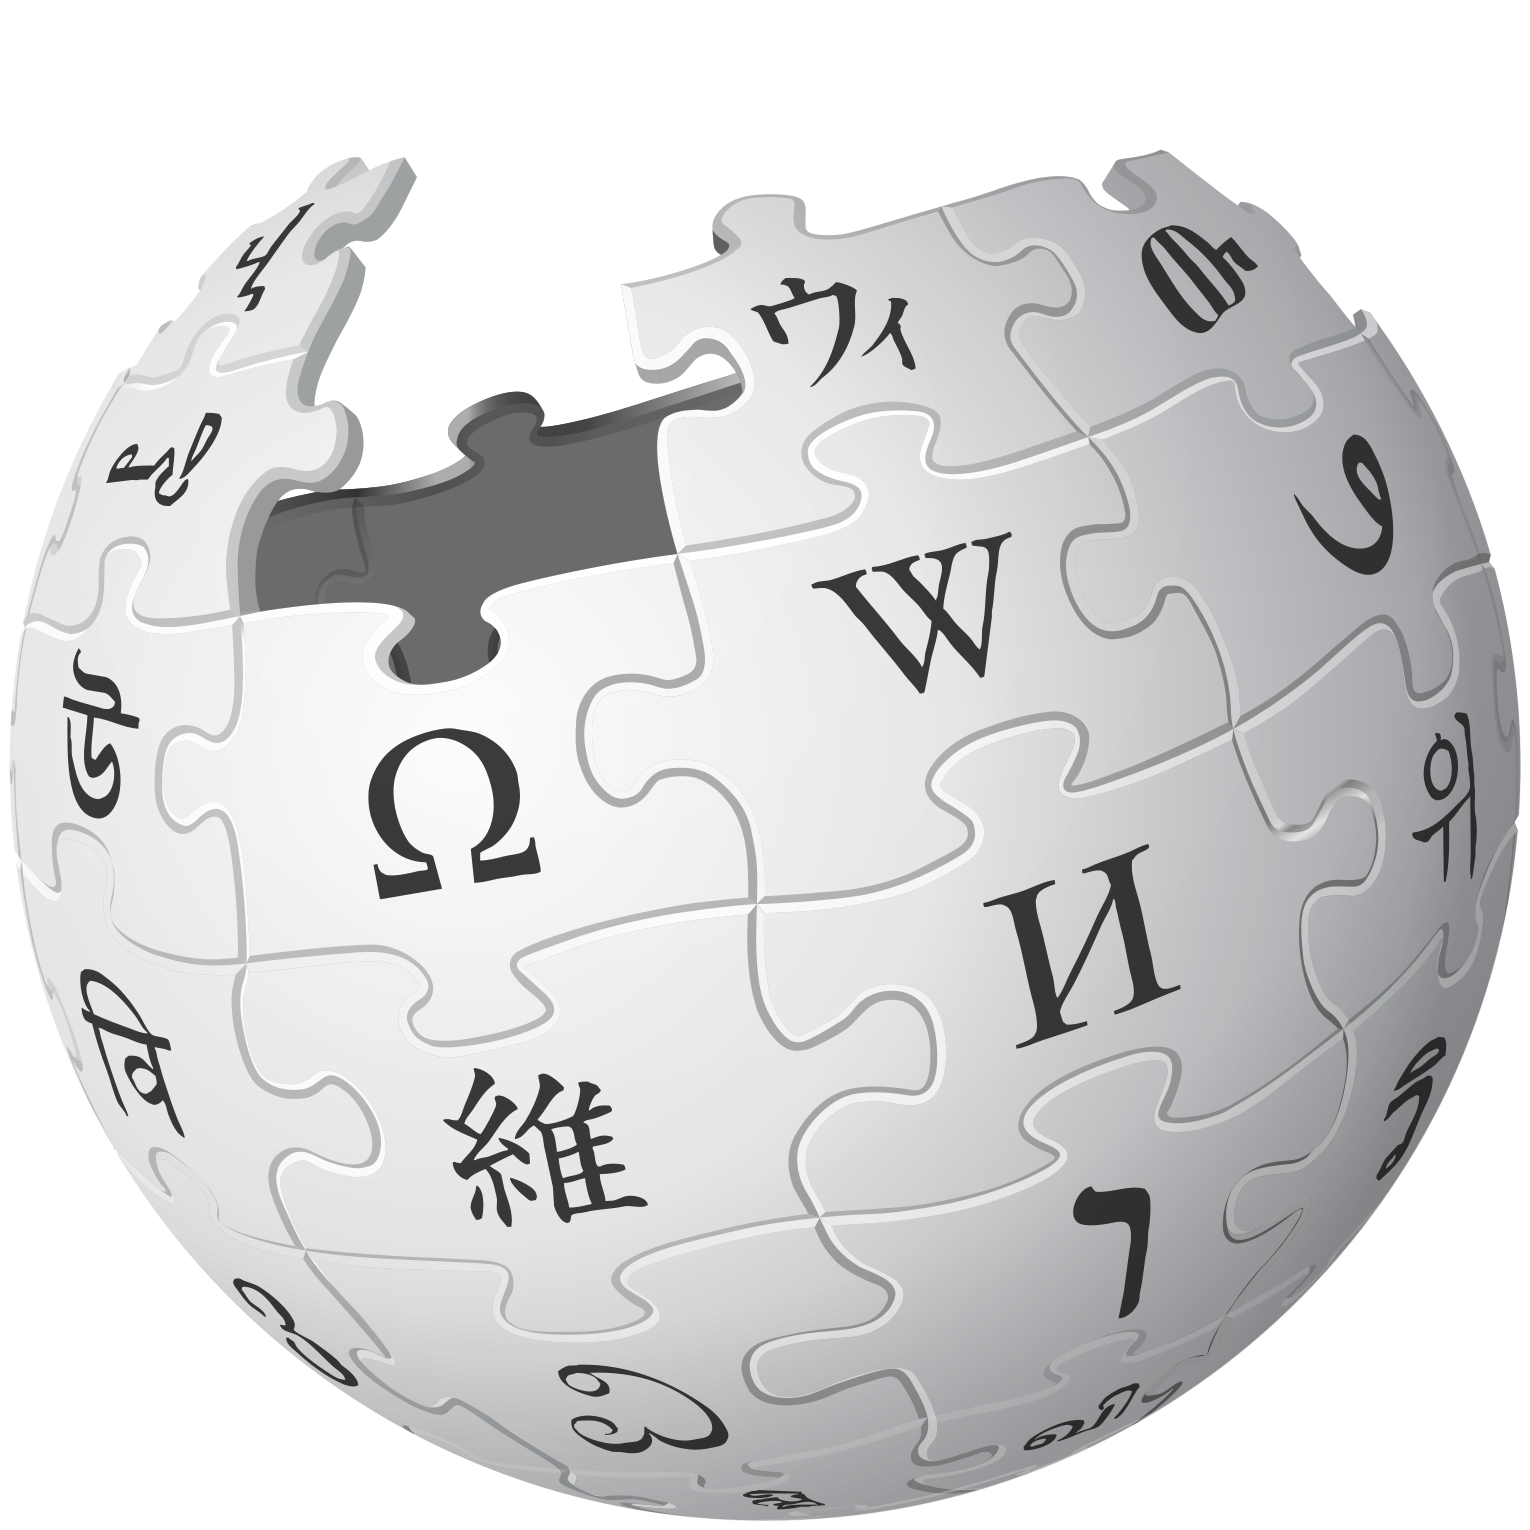 Des centaines de pages Wikipédia ont été remplacées par des croix gammées pendant la journée du 16 août